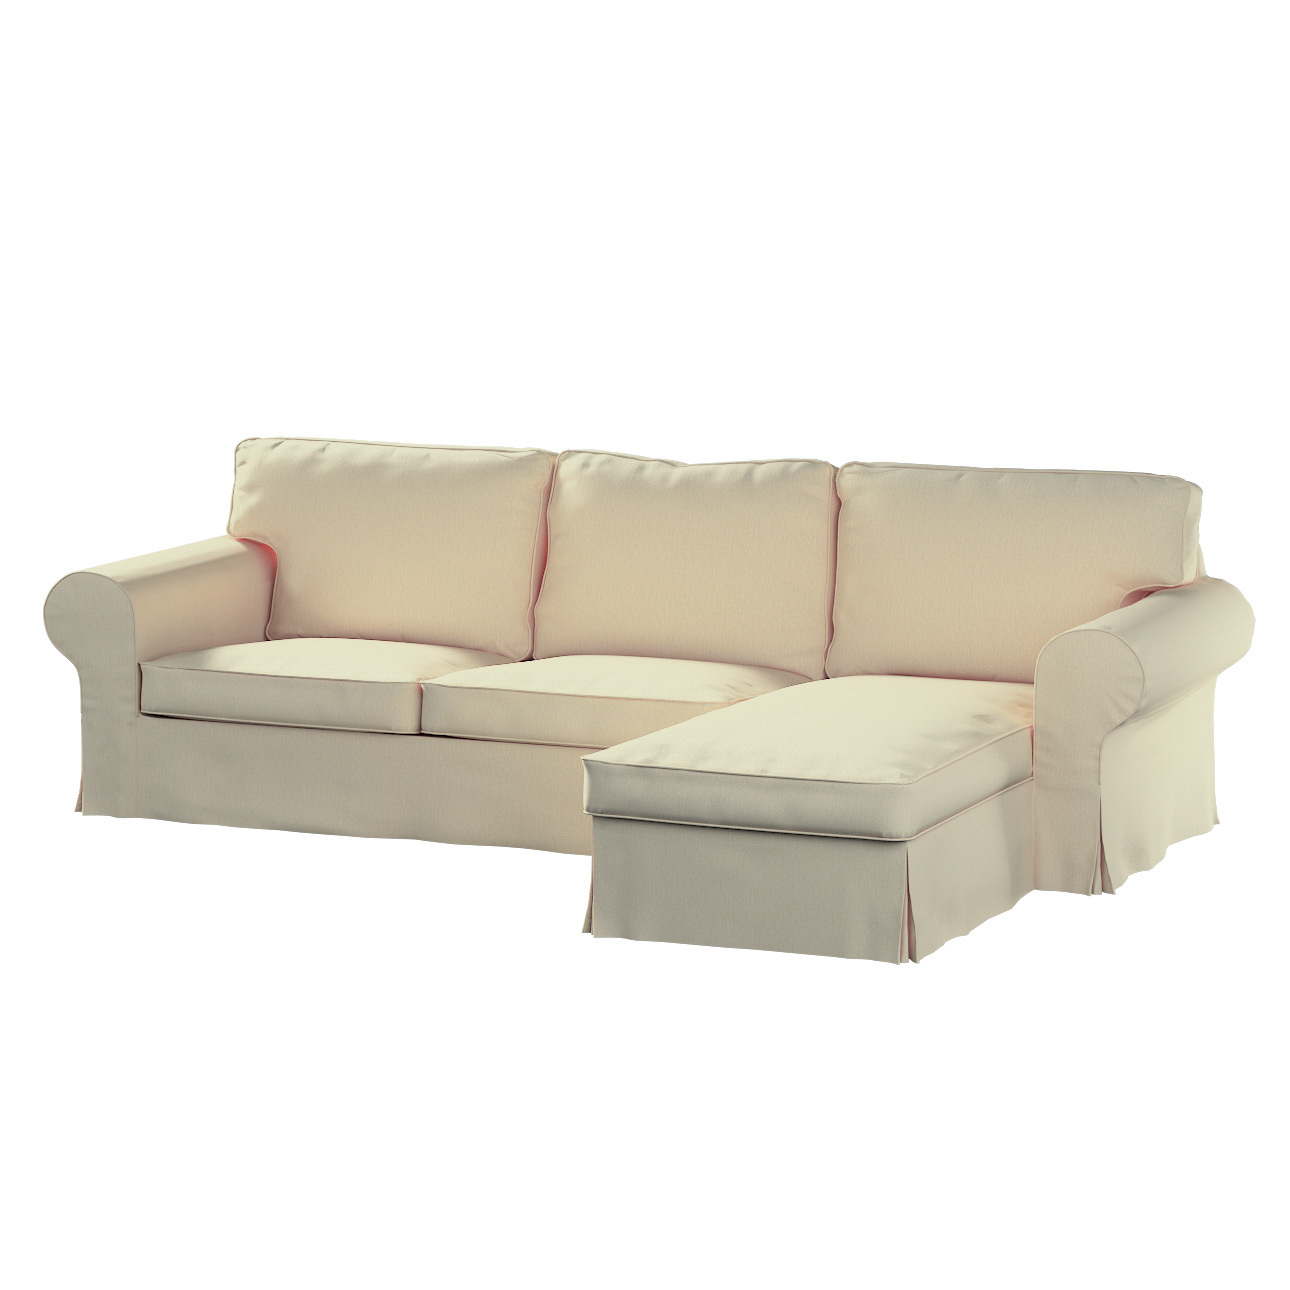 Bezug für Ektorp 2-Sitzer Sofa mit Recamiere, vanille, Ektorp 2-Sitzer Sofa günstig online kaufen